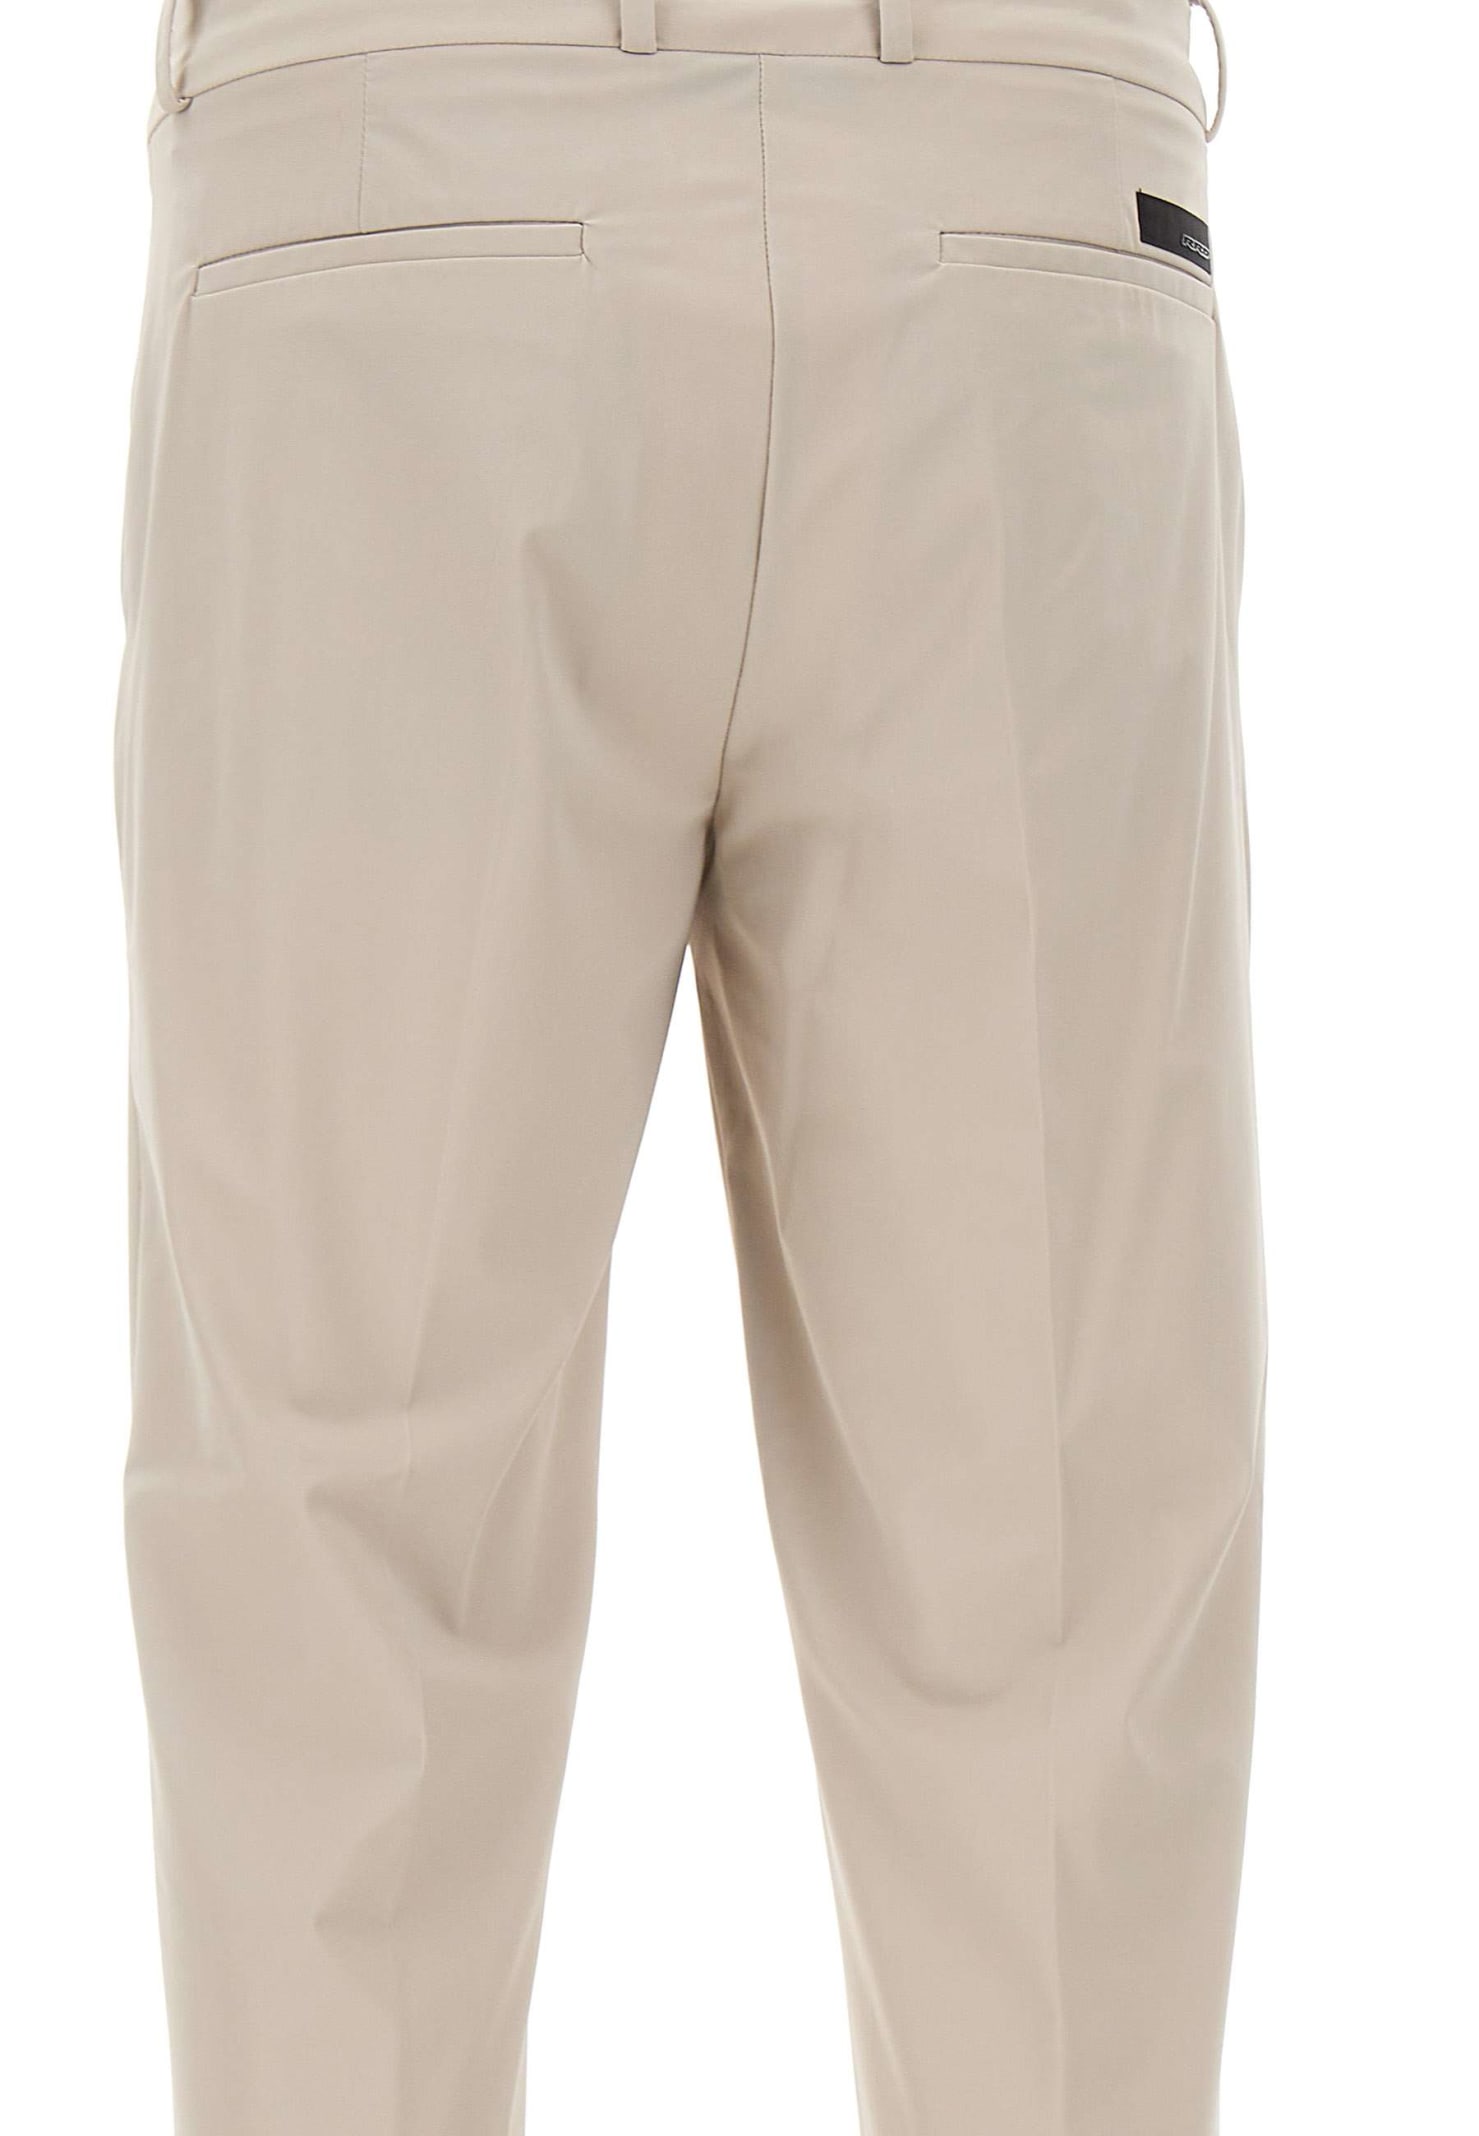 Shop Rrd - Roberto Ricci Design Mens Trousers Revo Chino In White Sand